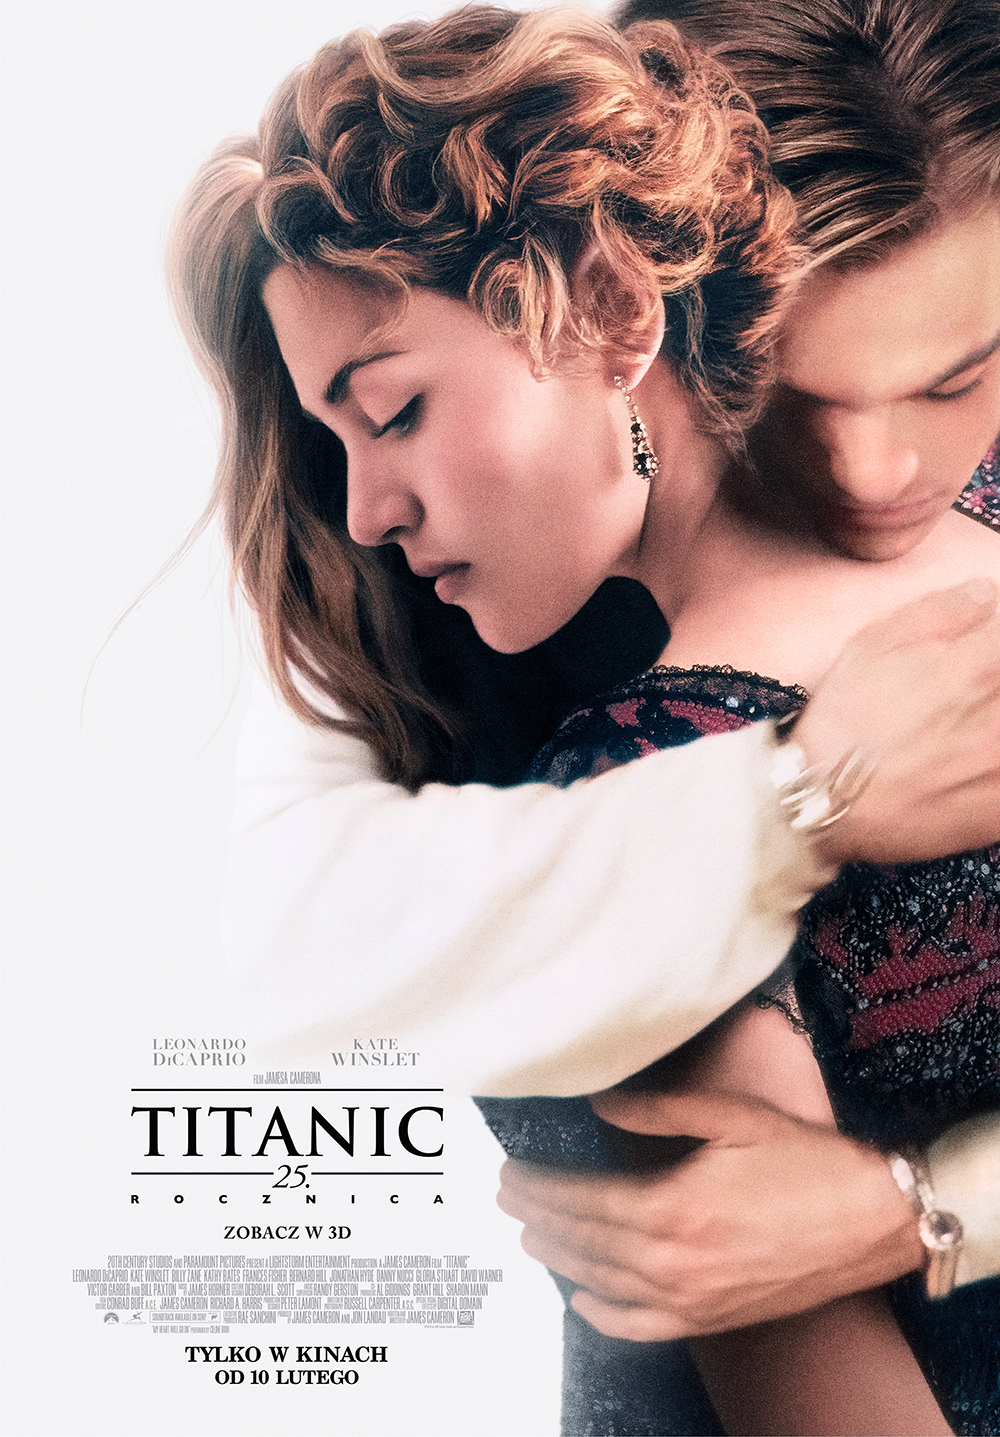 Titanic: 25. rocznica / POKAZY SPECJALNE W 3D